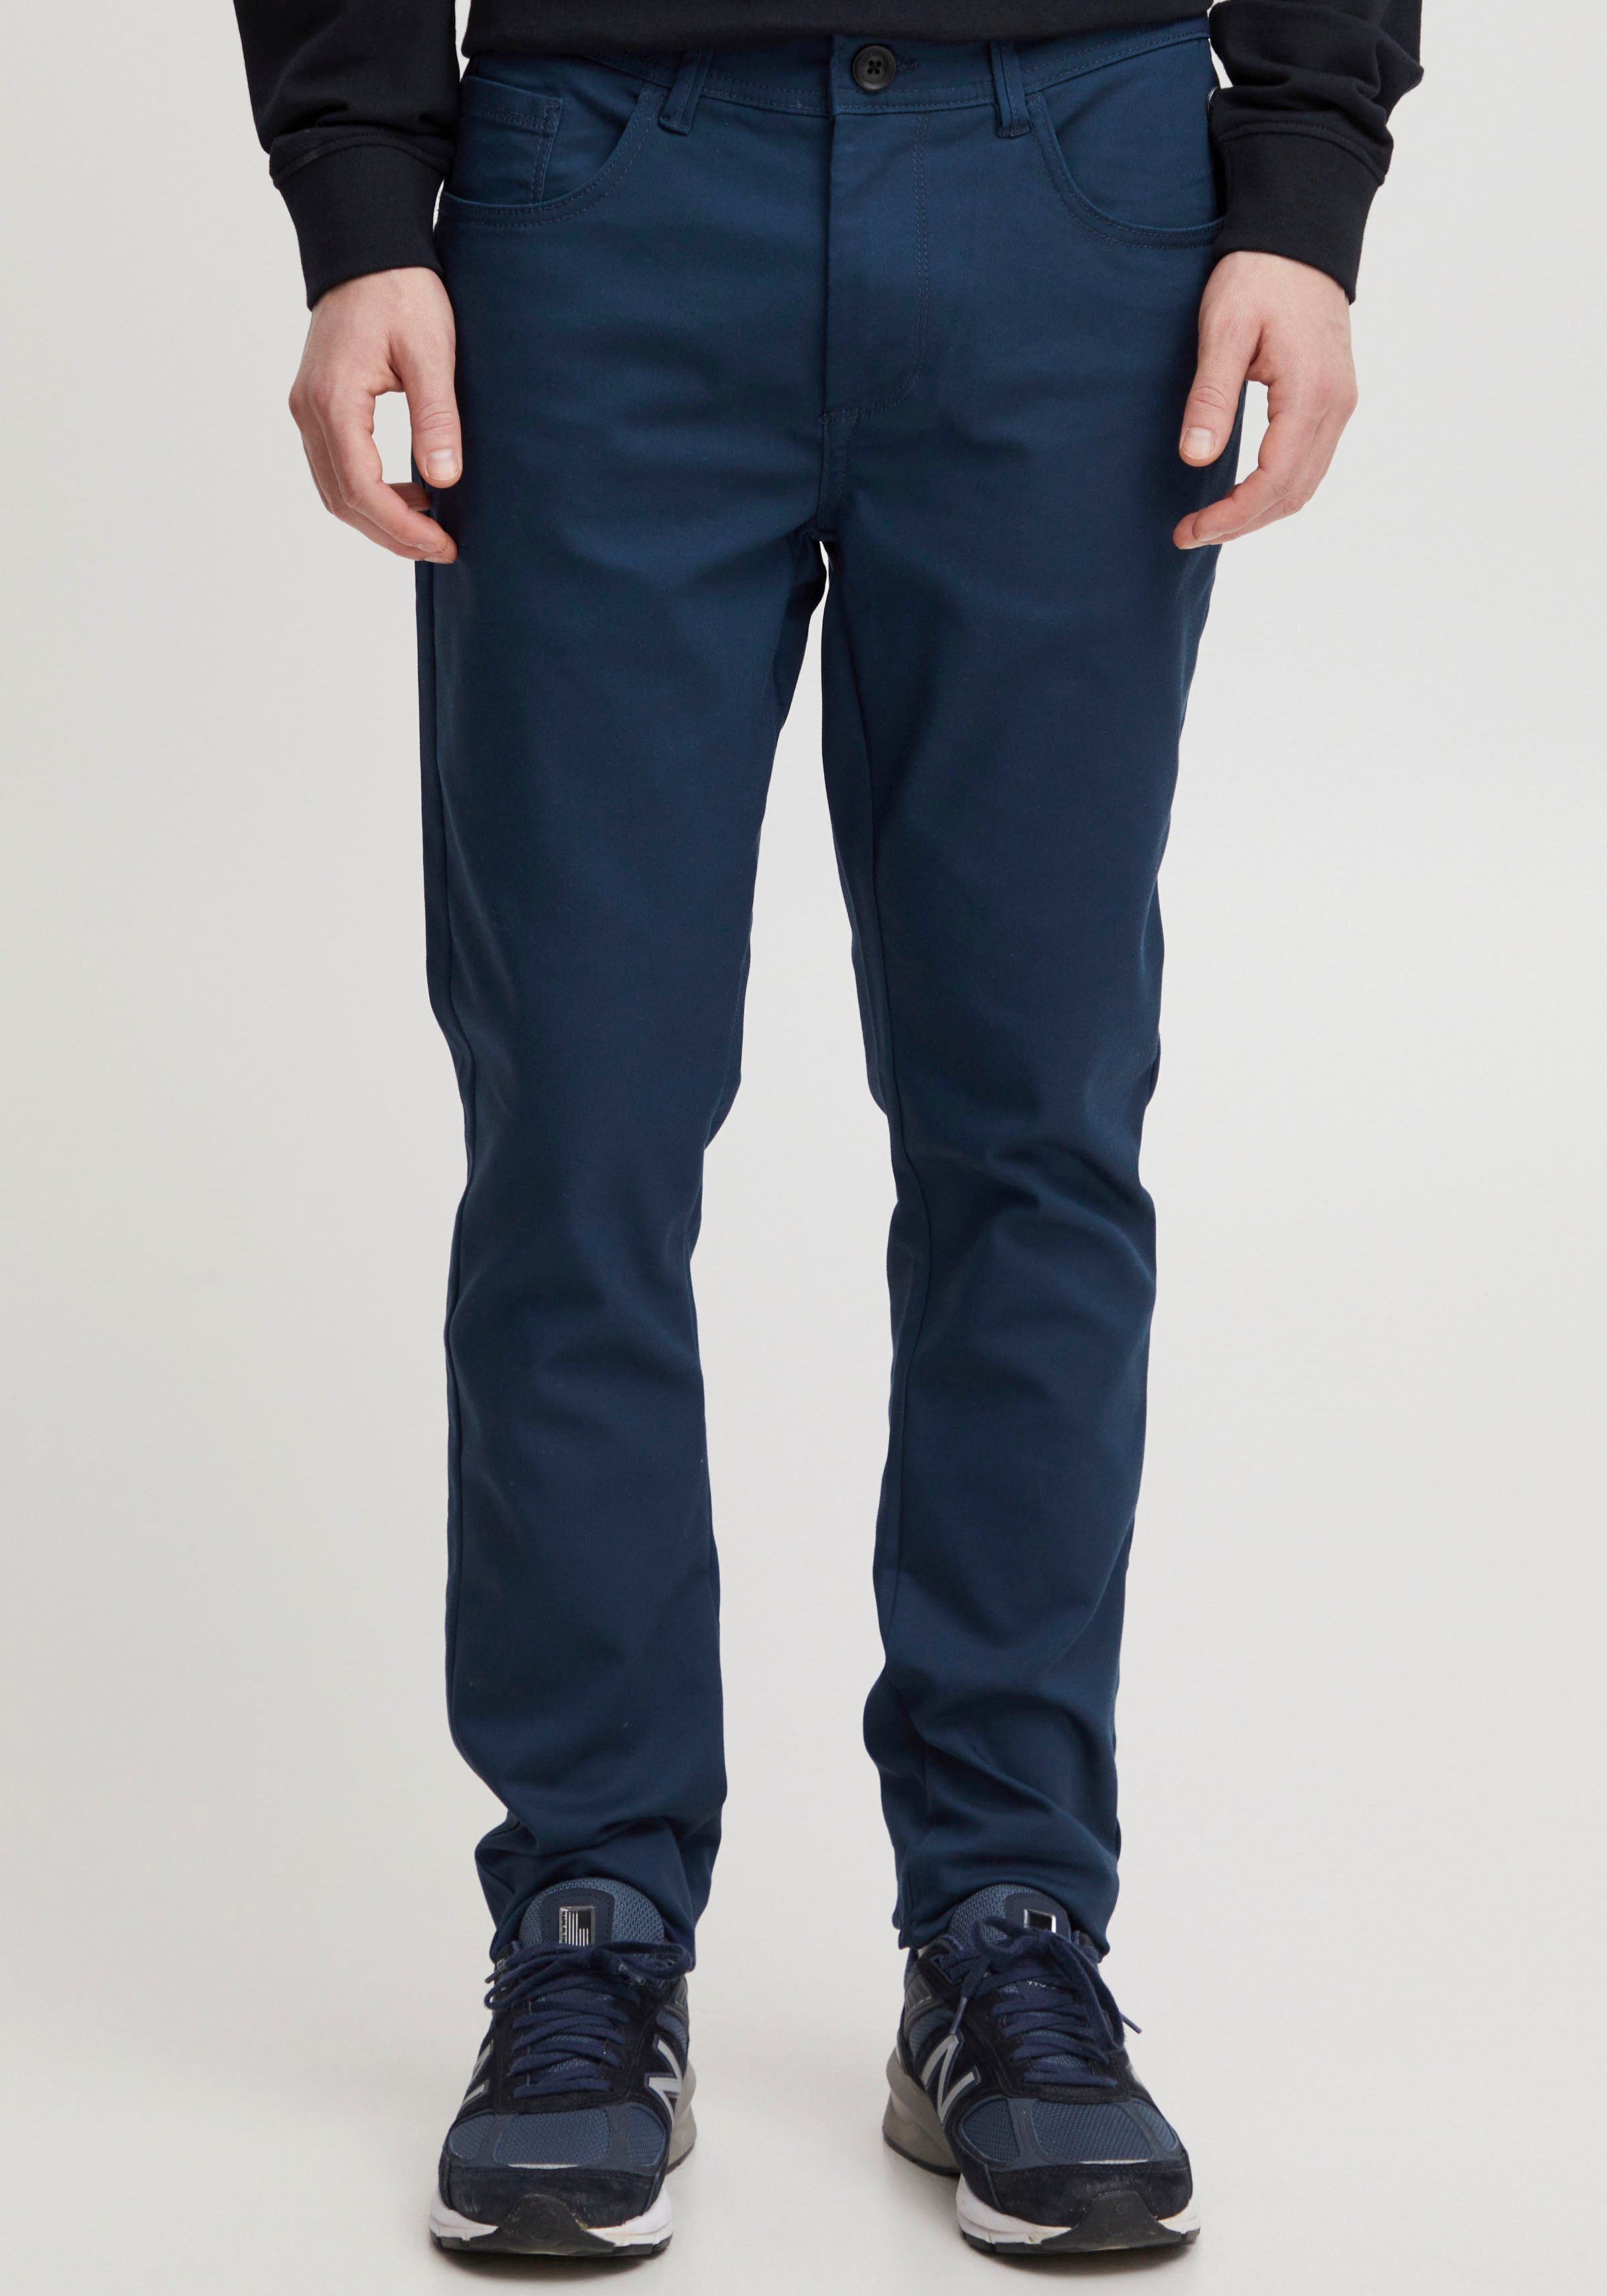 5-Pocket-Hose Blend blue BL-Trousers